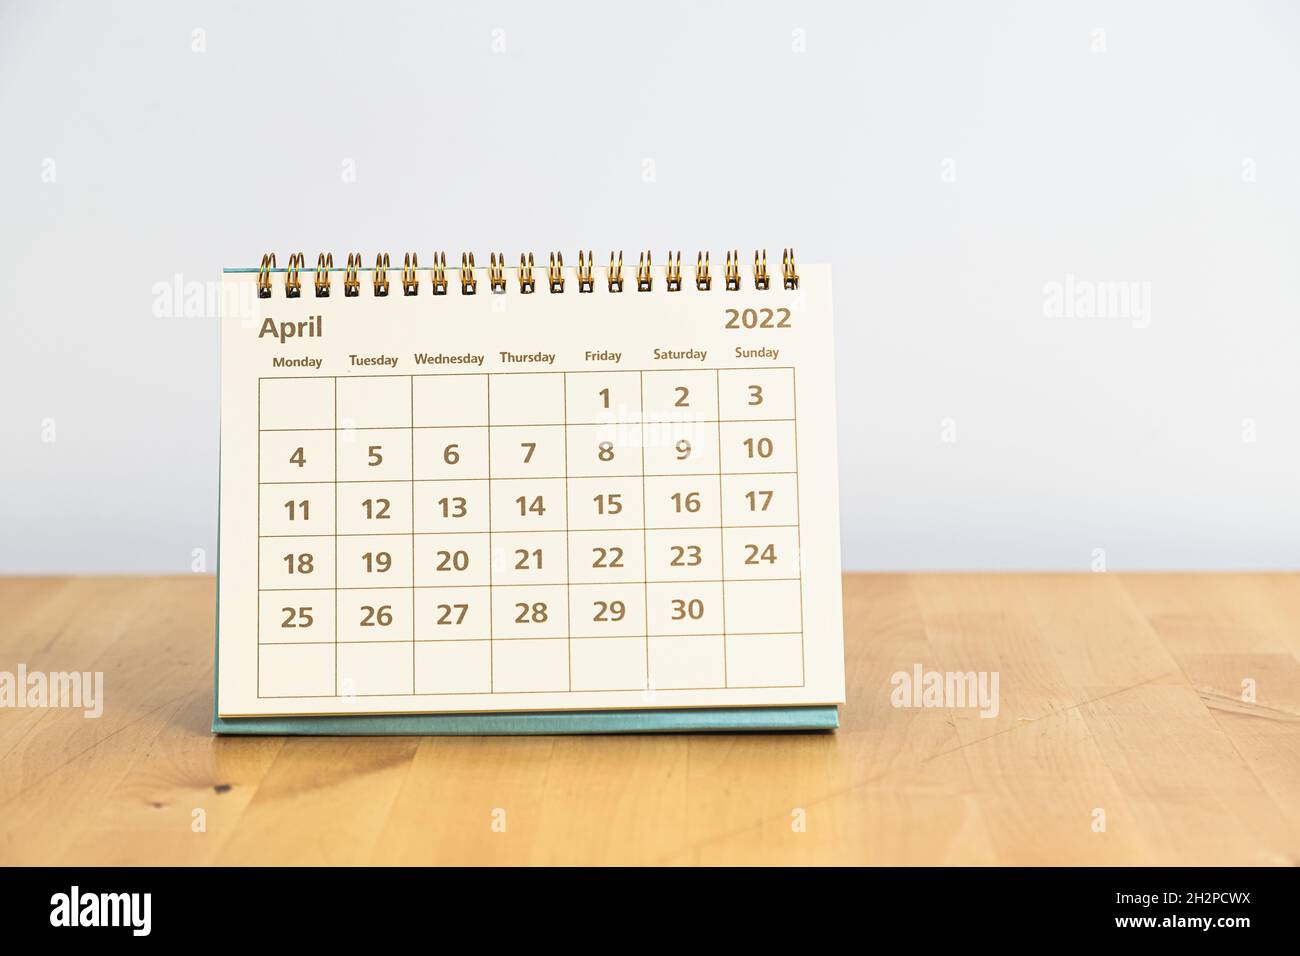 April 2022 Kalender auf einem Holztisch Stockfoto